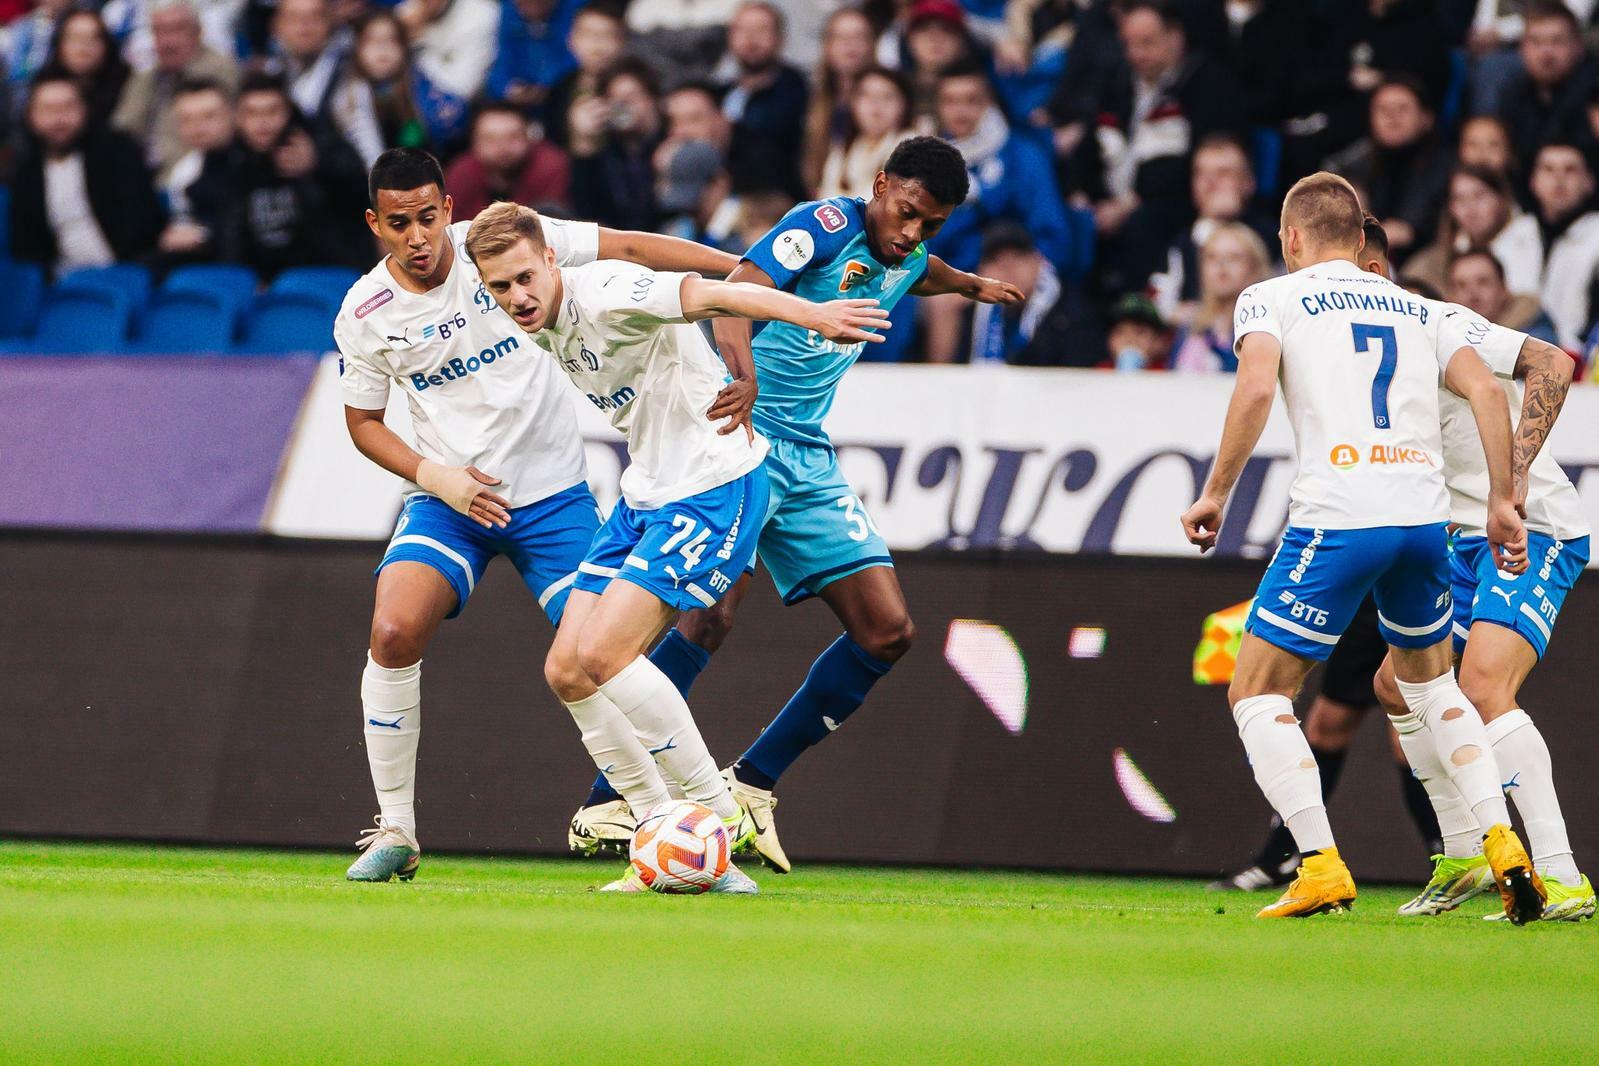 Noticias del FC "Dynamo" Moscú | Daniil Fomin: "Esta temporada nos hemos vuelto mentalmente más fuertes". Sitio oficial del club Dynamo.